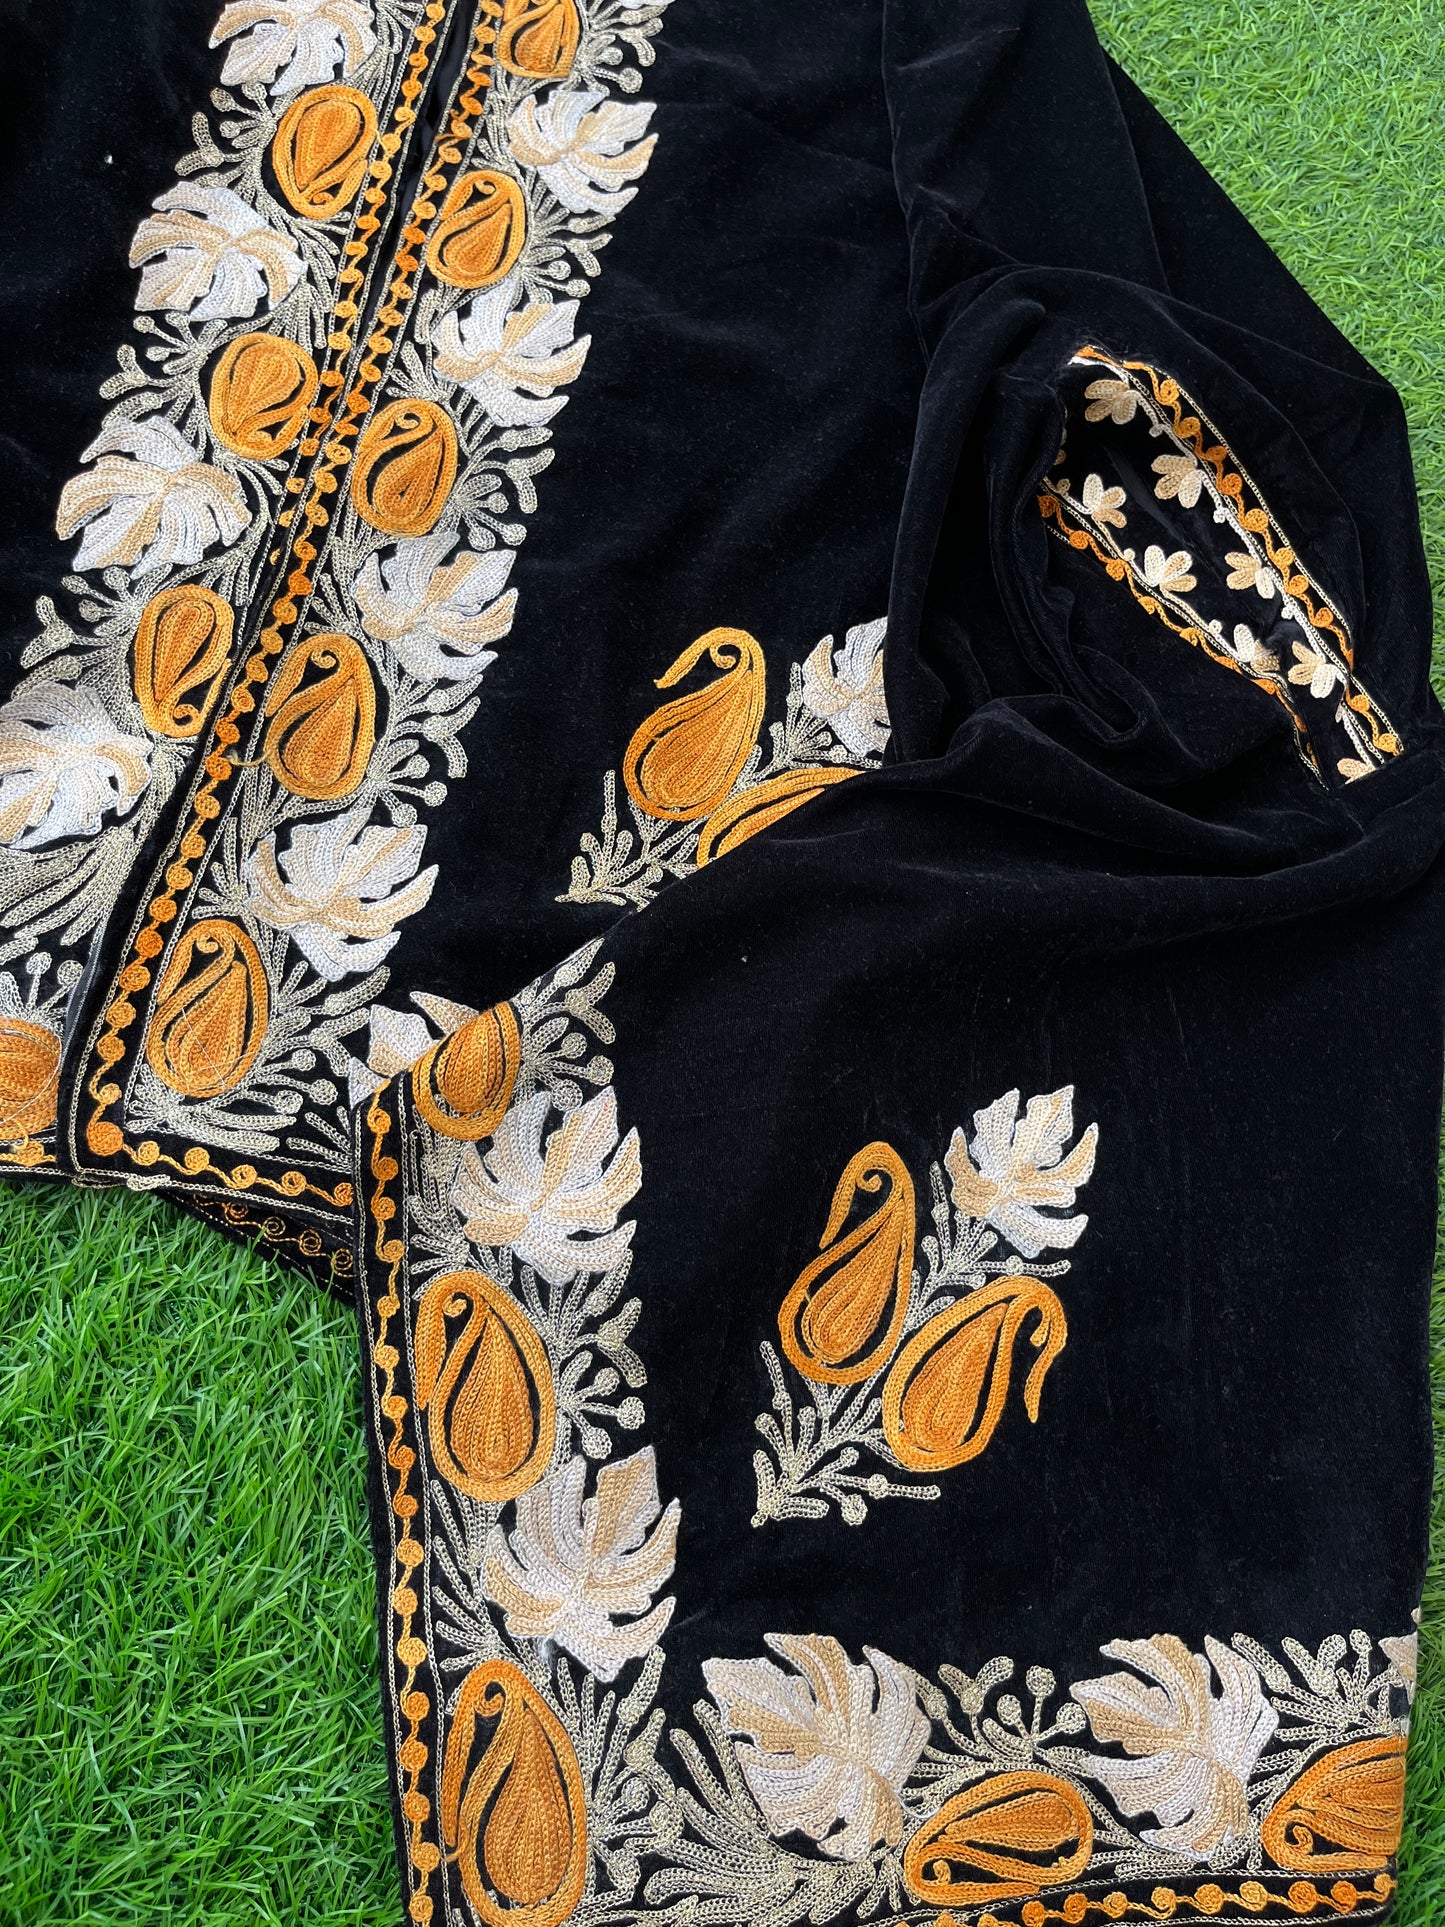 Black Aari Embroidered Velvet Cape